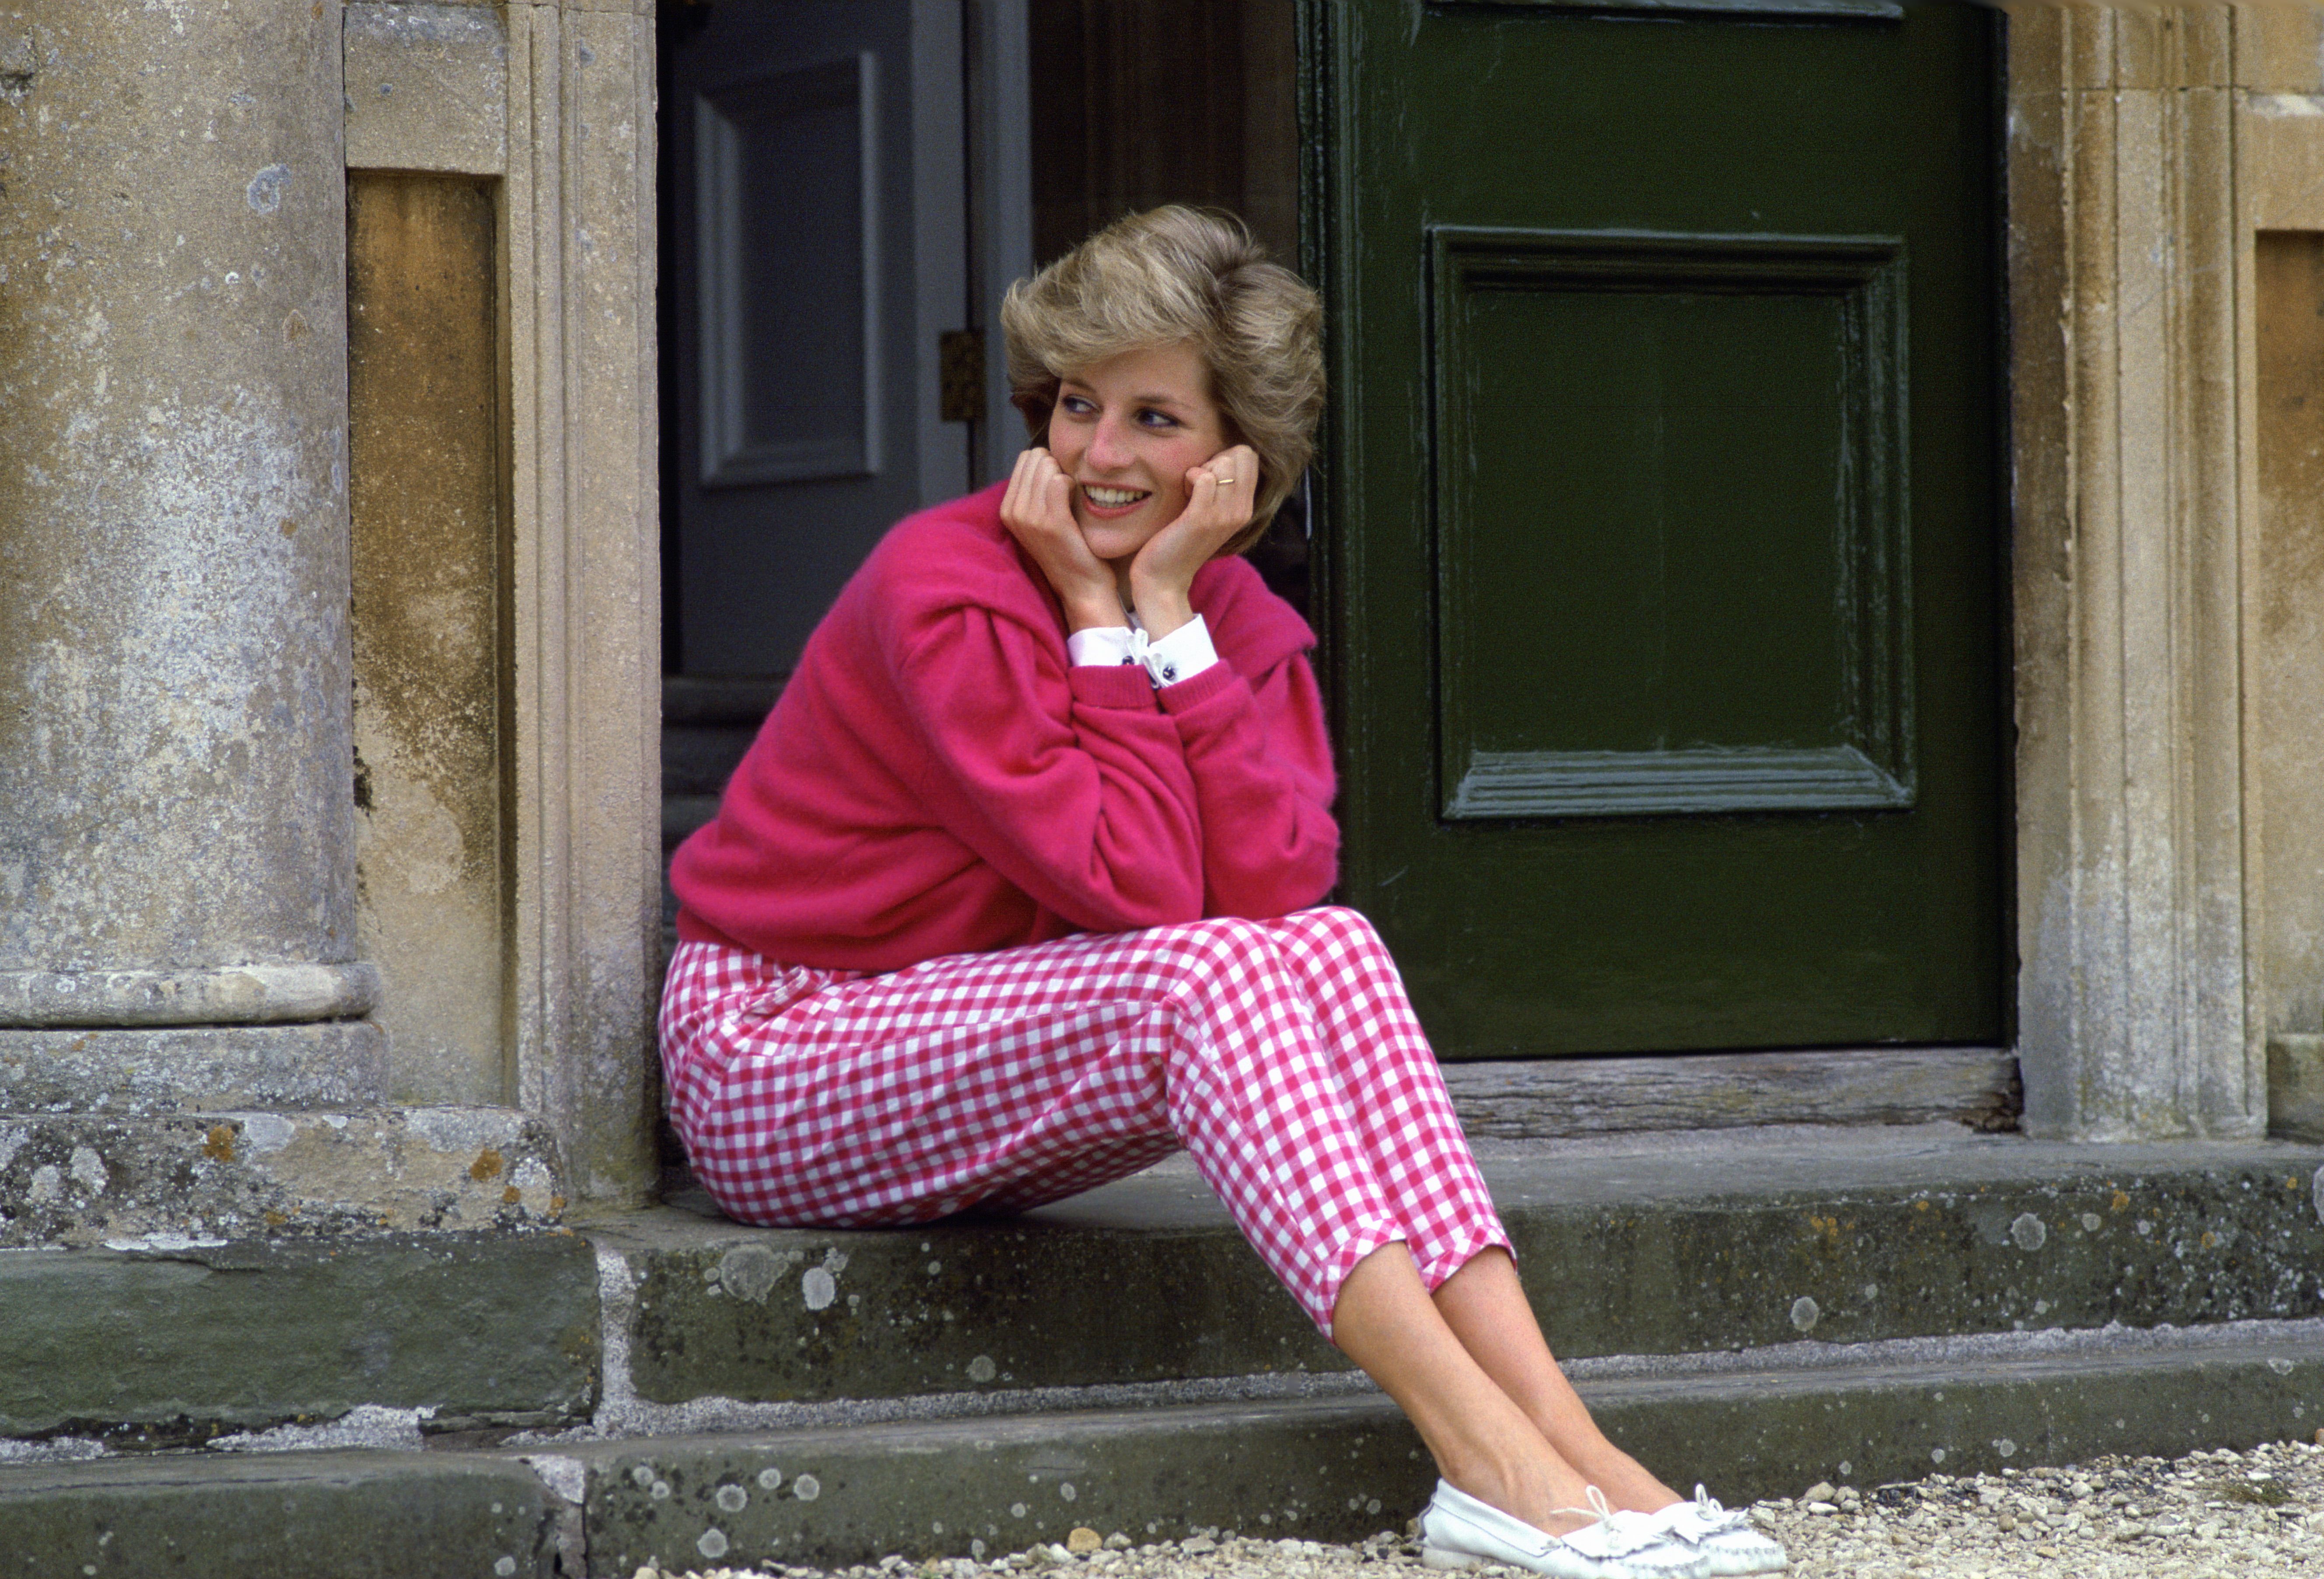 Ver internet Cinco llave inglesa Zara tiene los pantalones de cuadros vichy rosas de Lady Di